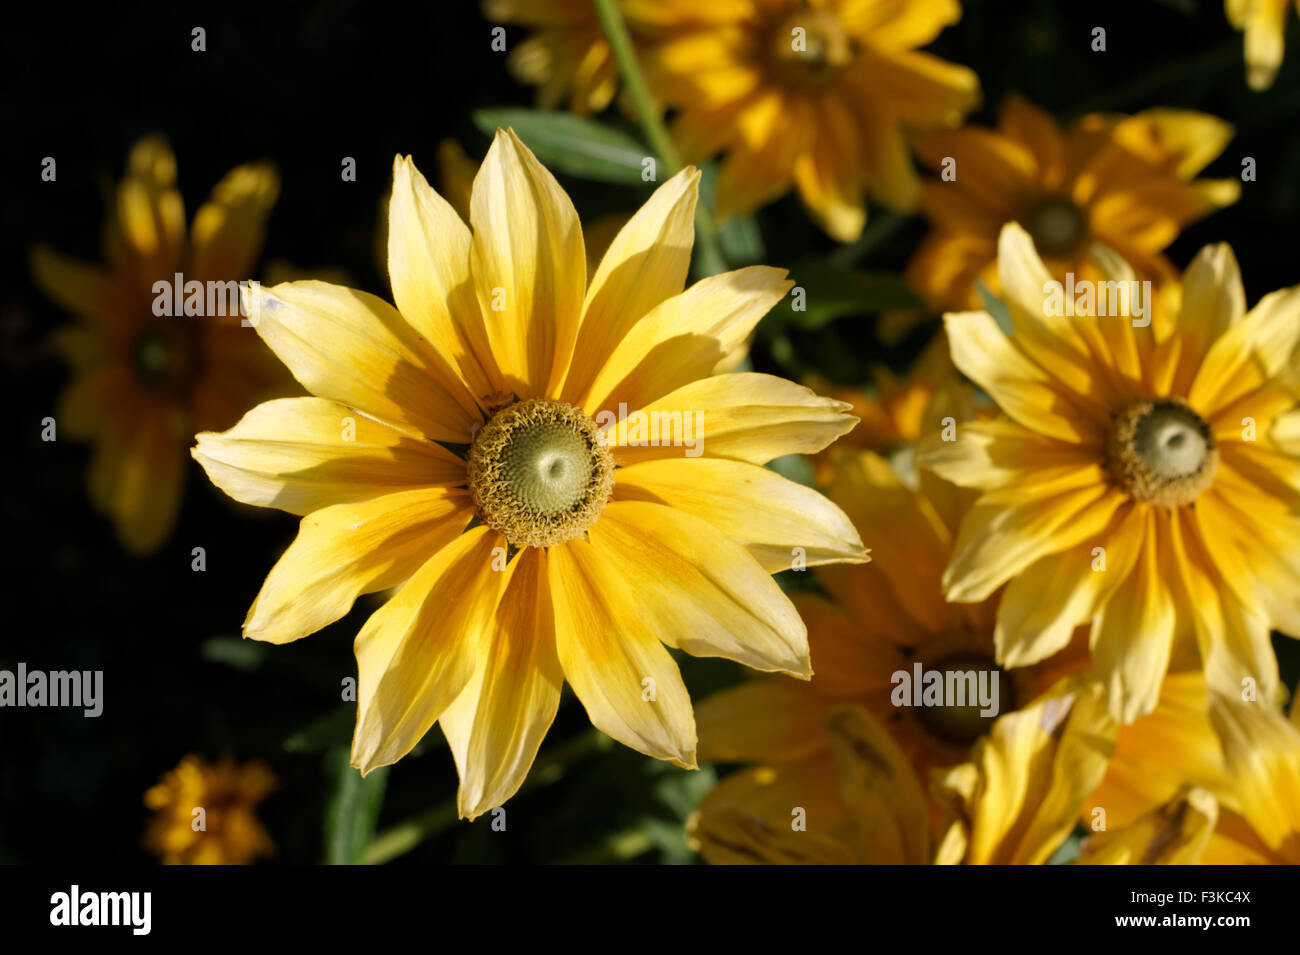 Rudbeckia Hirta Blumen oder Prairie Sun, fotografiert auch bekannt als "Gloriosa" Daisy oder Black-Eyed Susan spät in der Vegetationsperiode Stockfoto